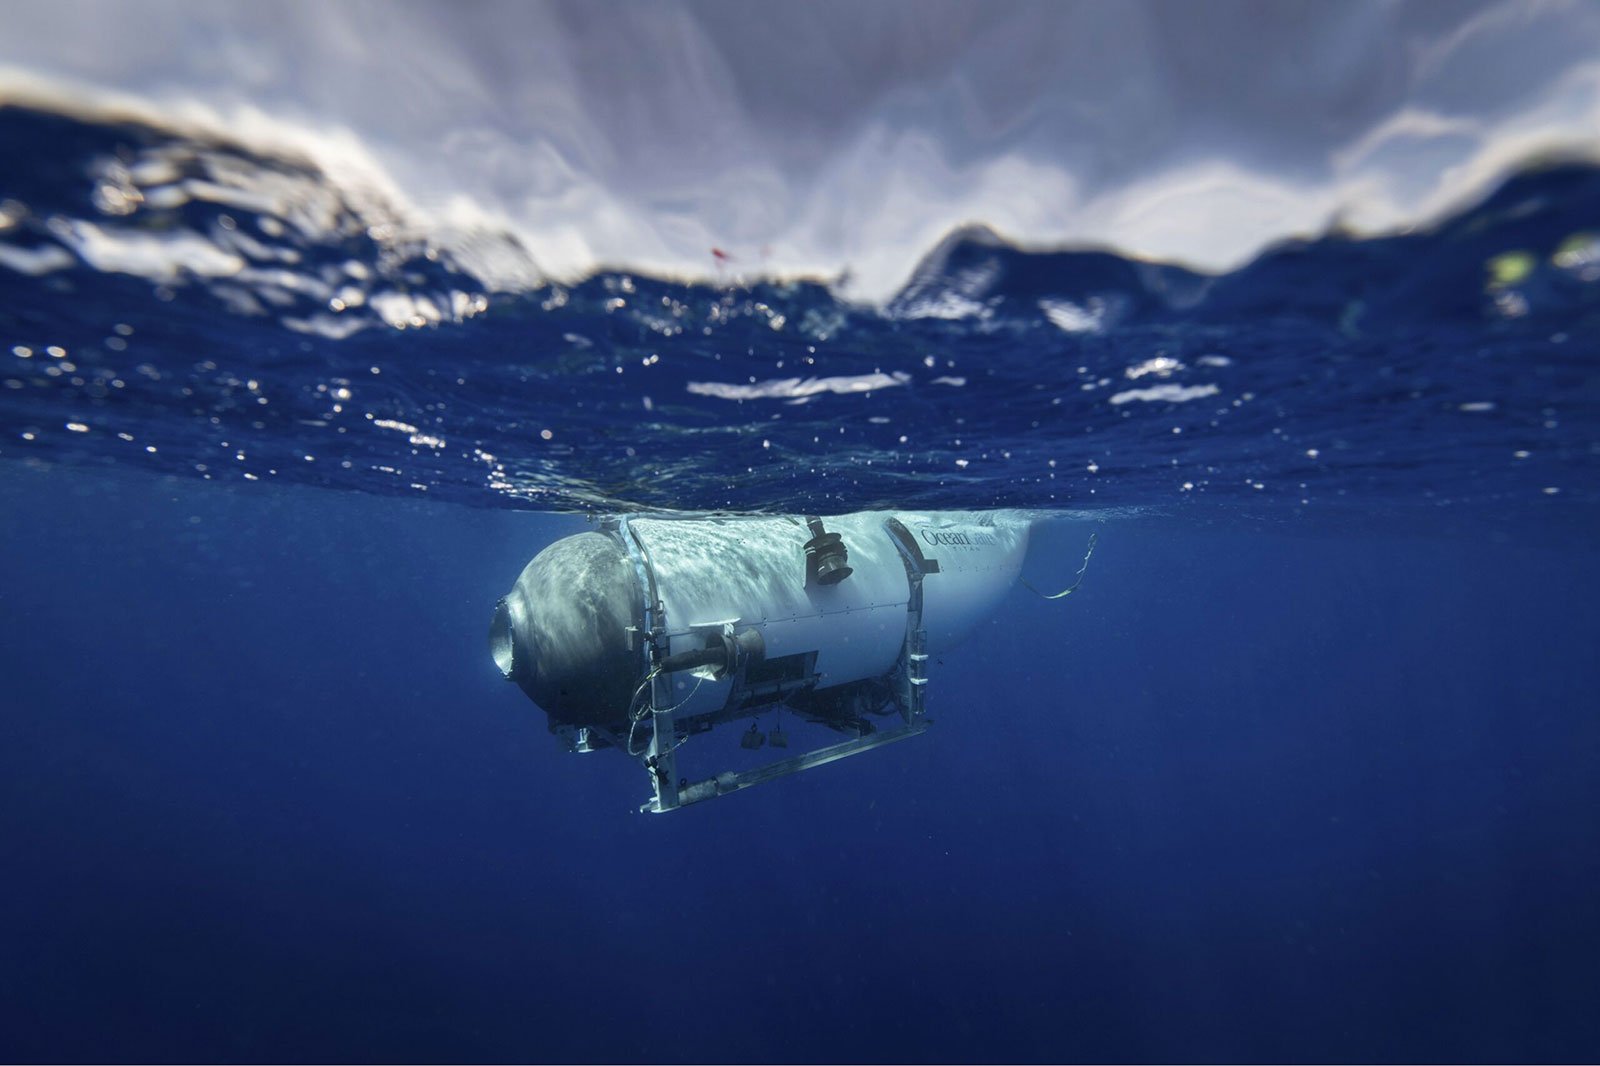 Tàu ngầm Titan đã chính thức cạn sạch oxy sau 96 giờ nỗ lực tìm kiếm không thành công